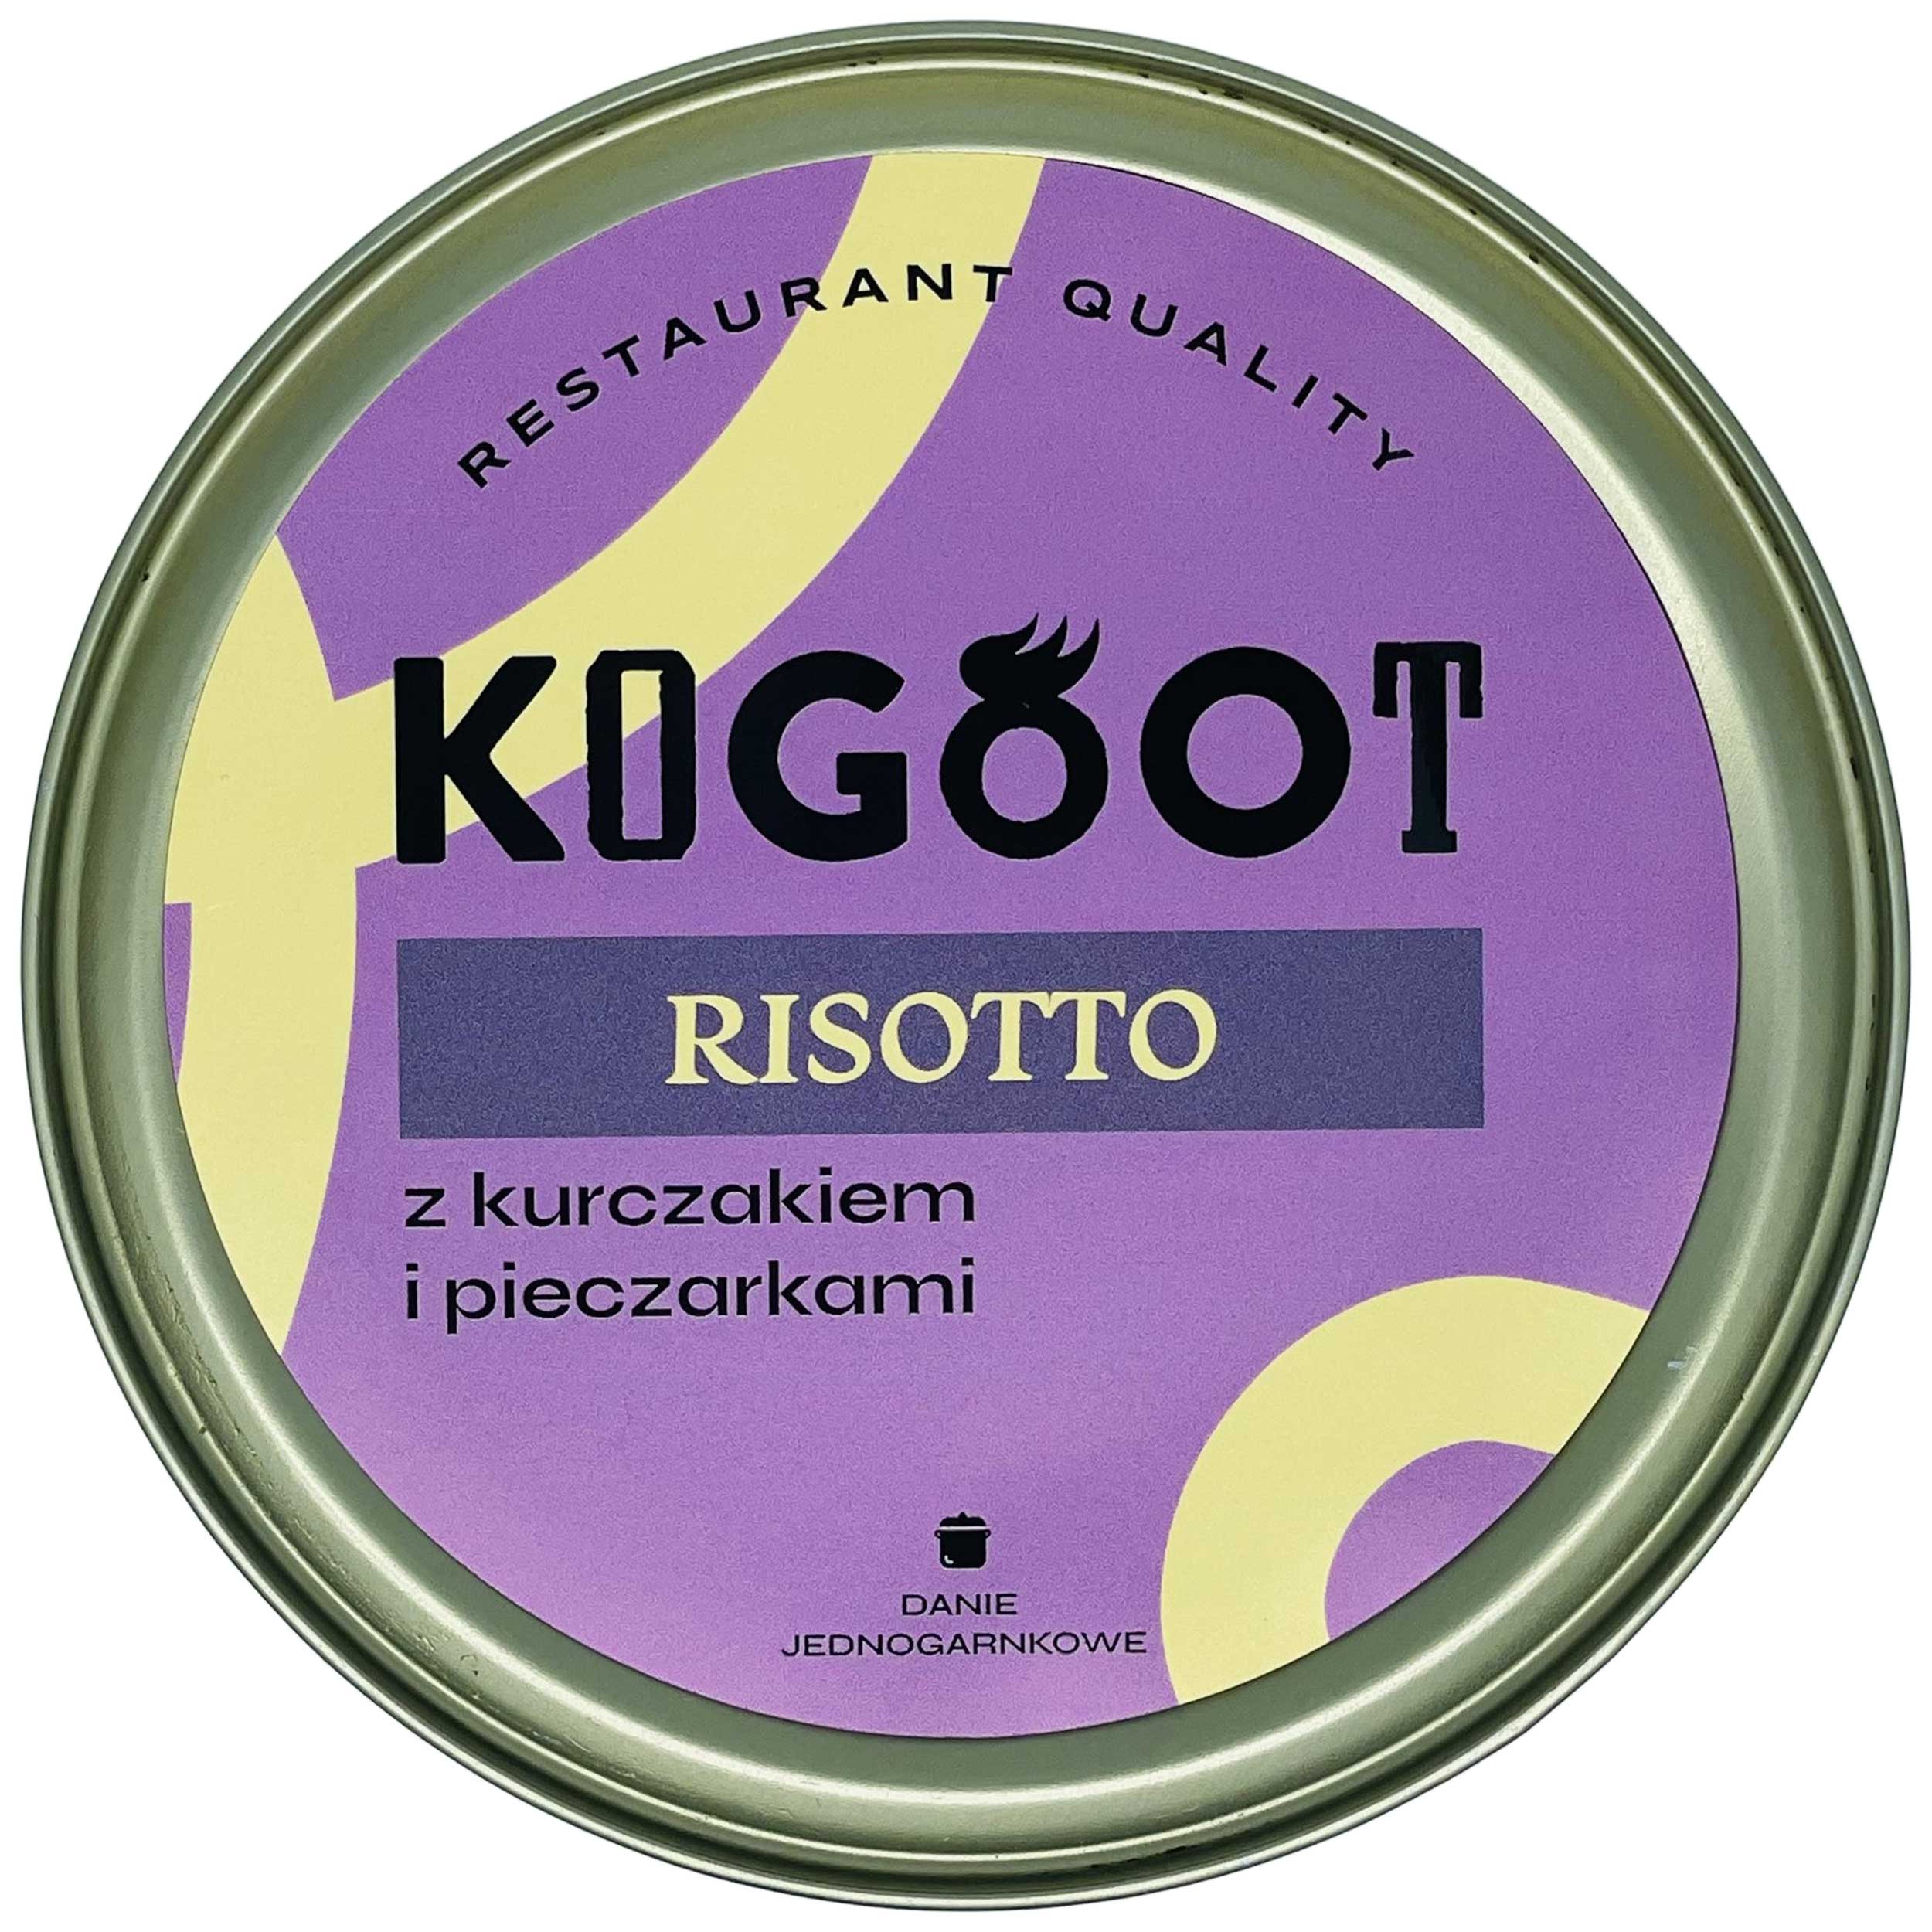 Żywność konserwowana Kogoot - Risotto z kurczakiem i pieczarkami 500 g